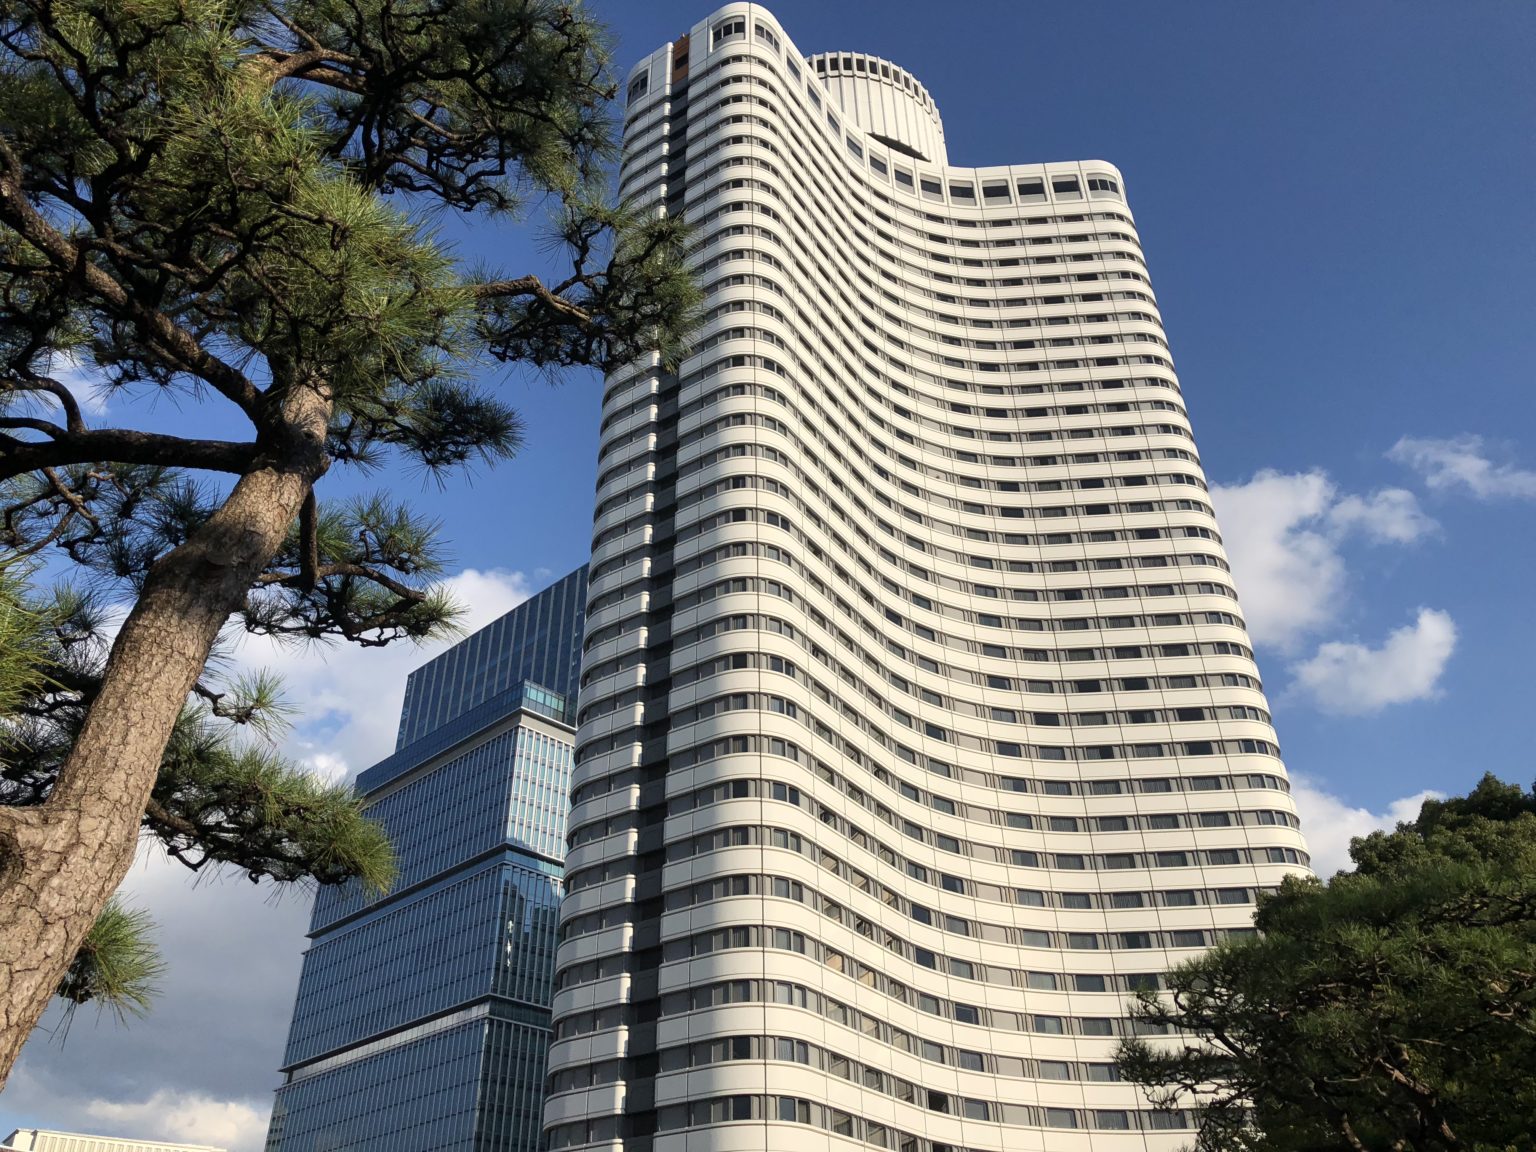 ホテルニューオータニ東京ガーデンタワーの秘密 | 芸能ゴシップ